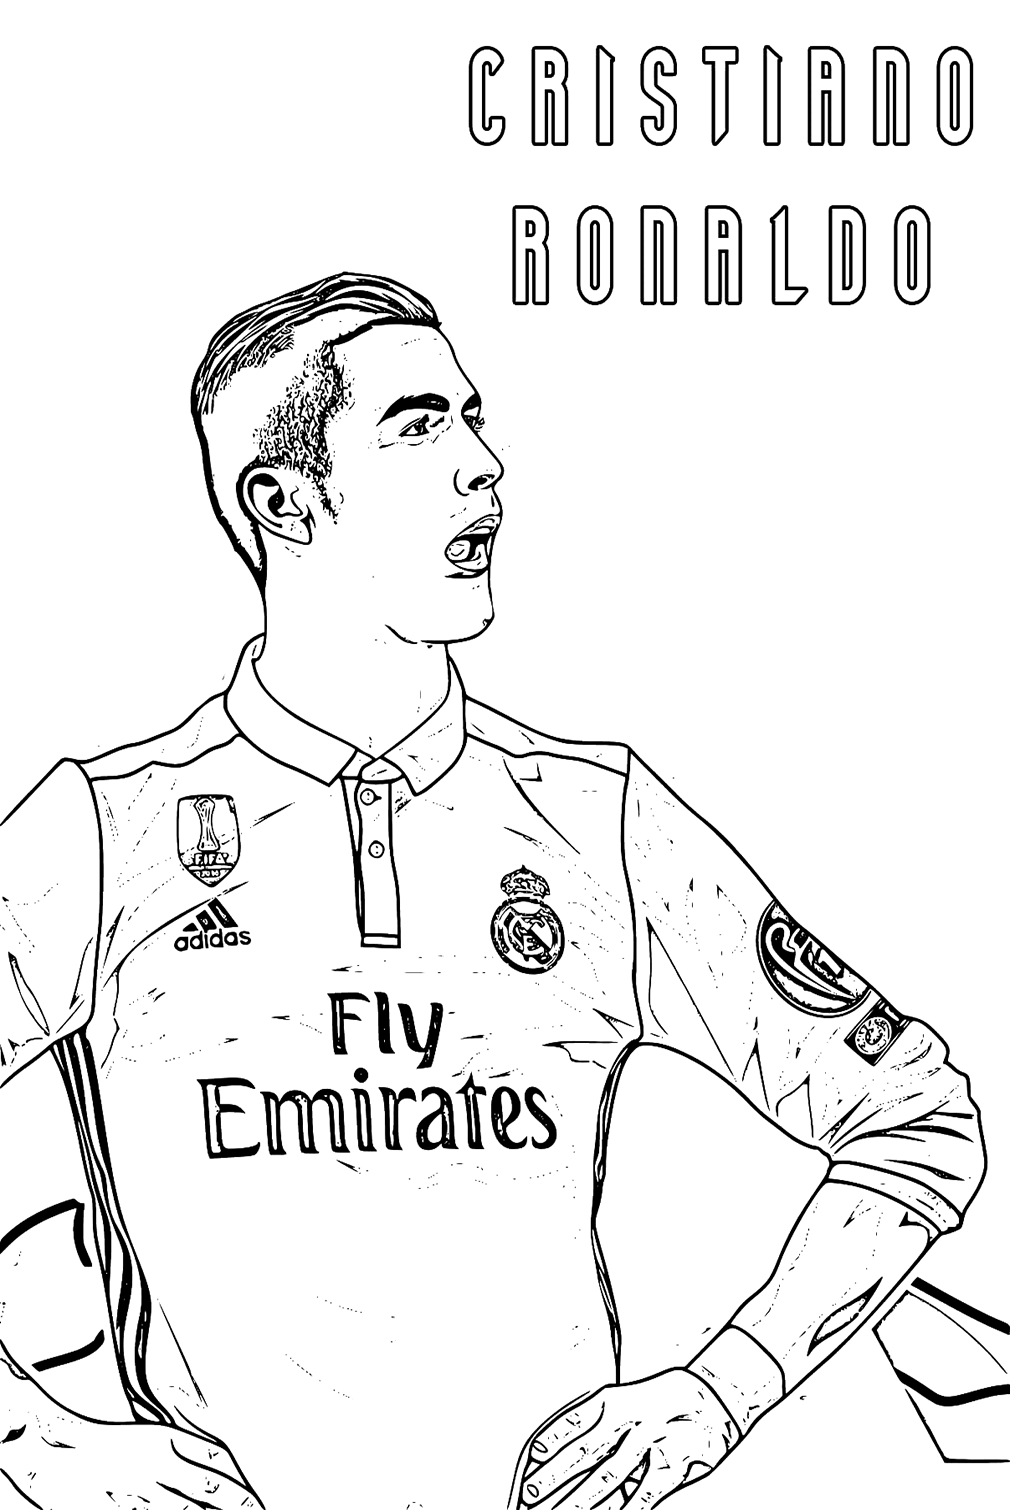 Immagini di Cristiano Ronaldo da colorare di Cristiano Ronaldo